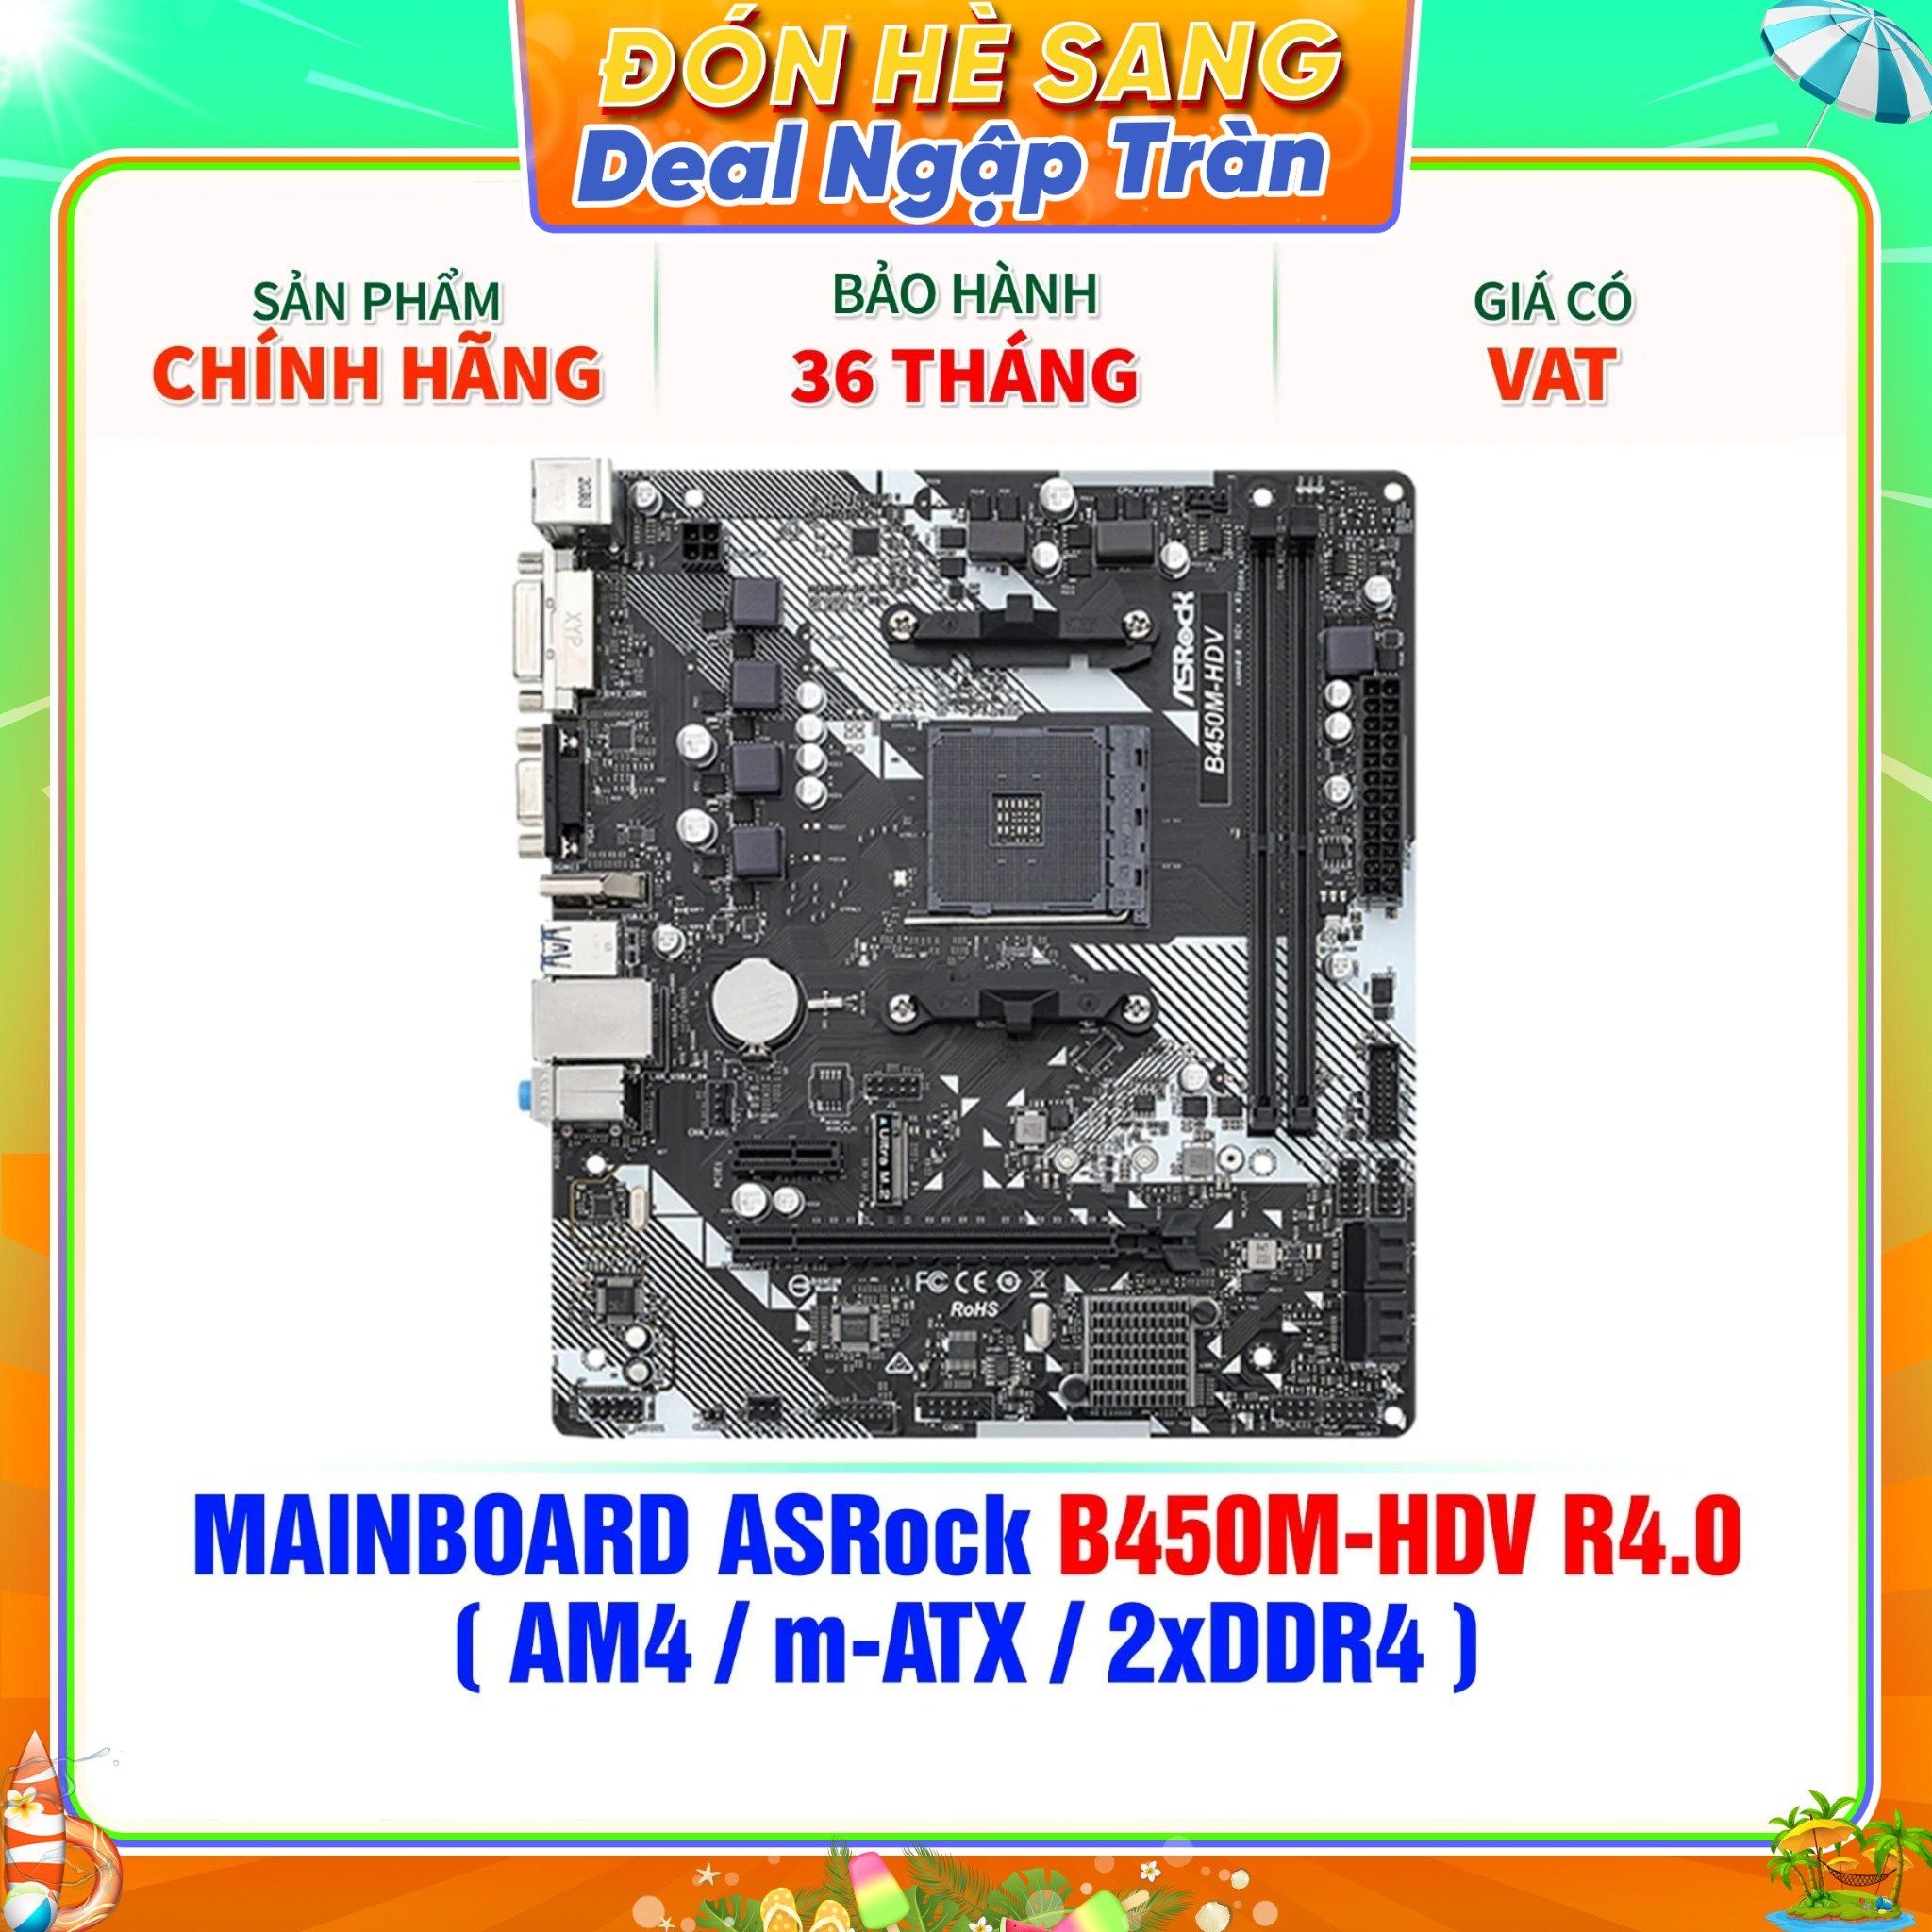  MAINBOARD ASRock B450M-HDV R4.0 ( AM4 / m-ATX / 2xDDR4 ) 